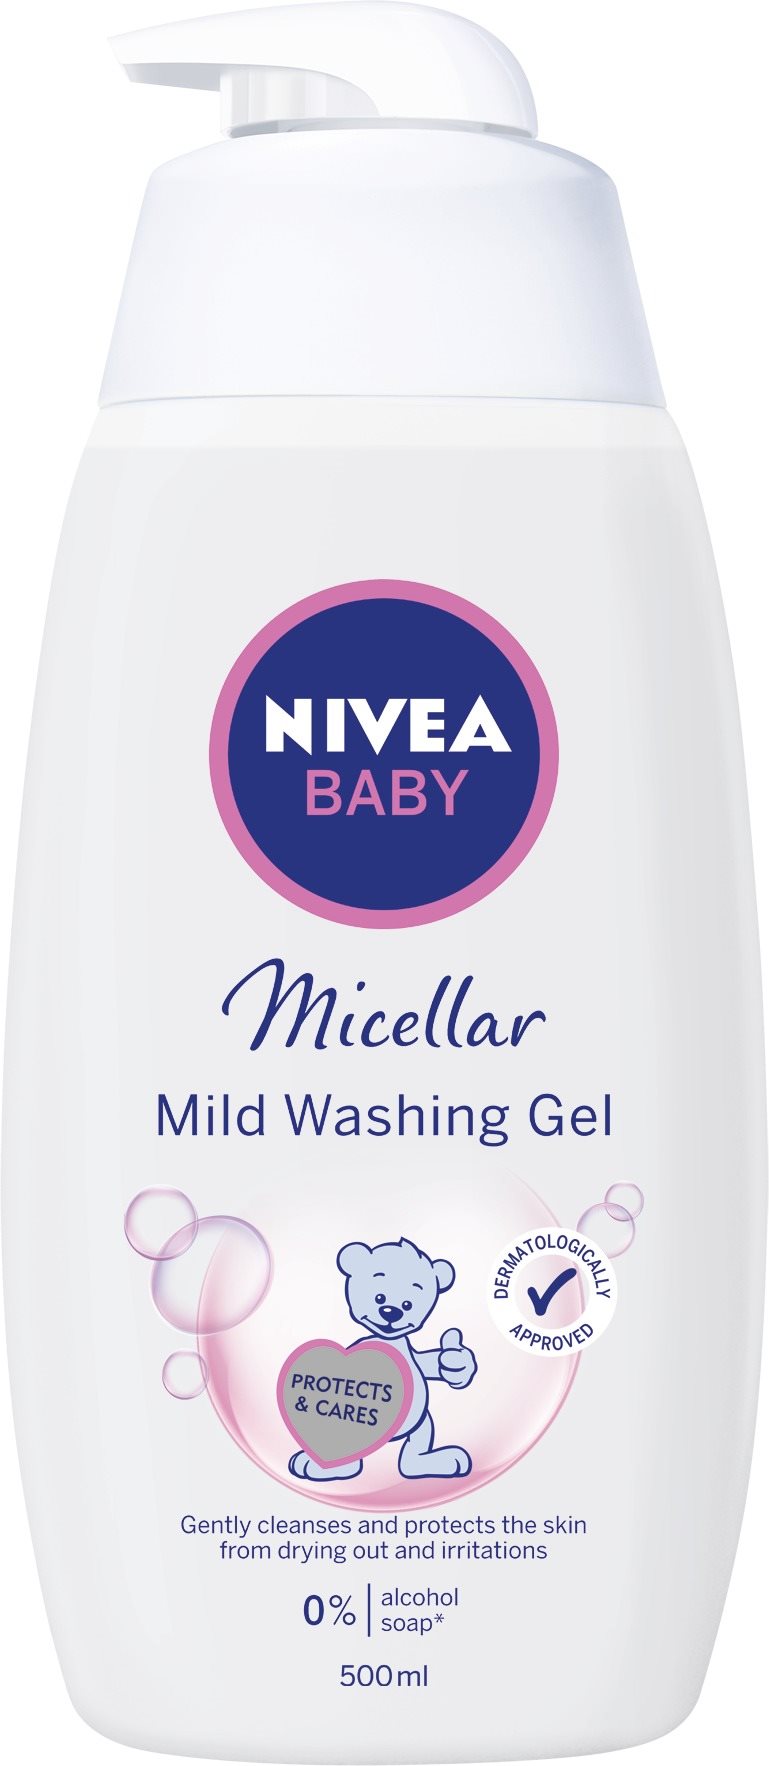 NIVEA Baby Micellar Mild Washing Gel, 500 ml